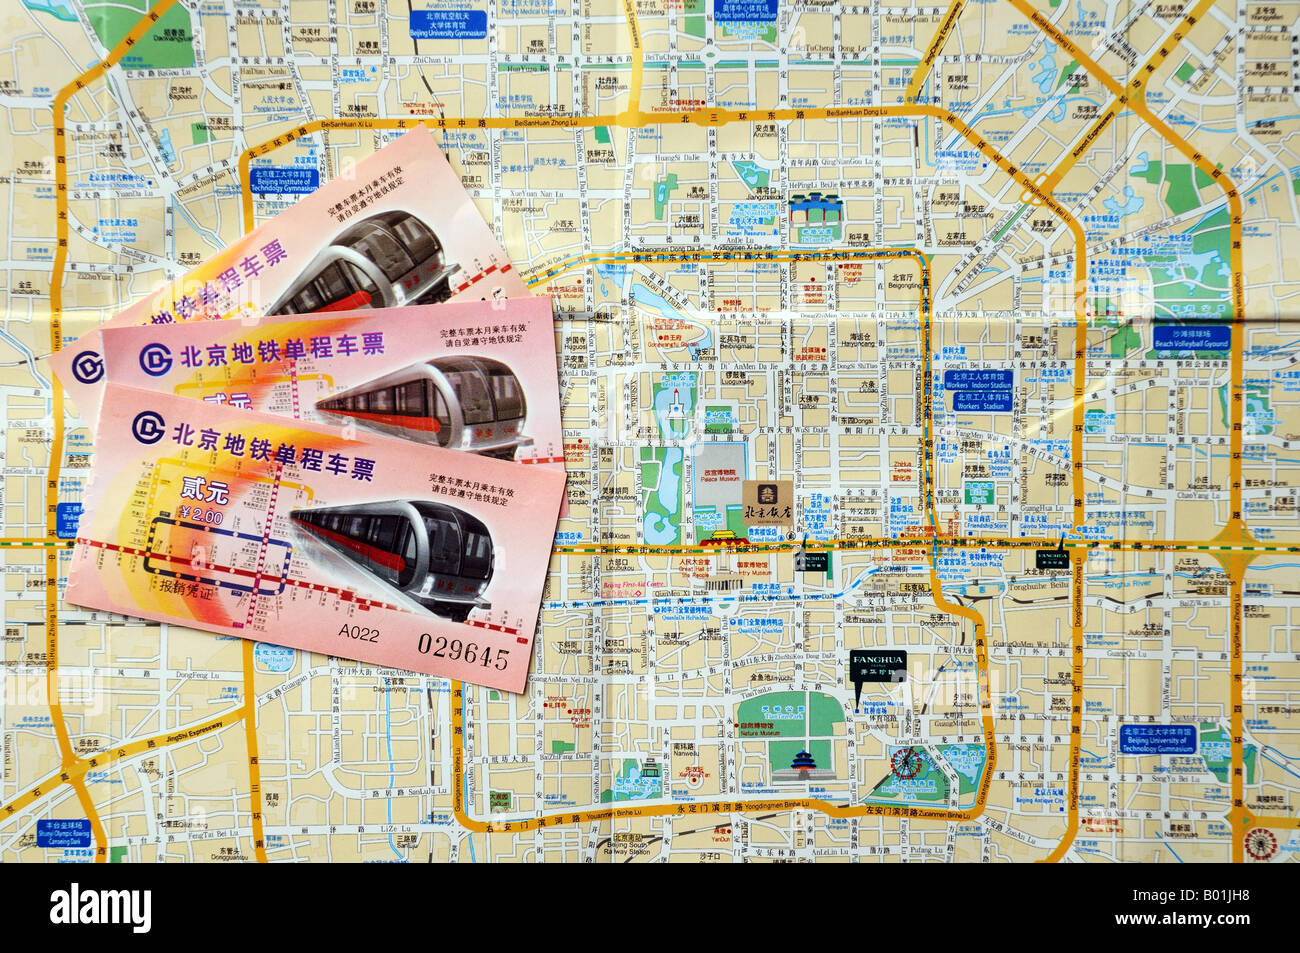 Plan des rues de centre de Pékin Chine 2008 avec les tickets de métro Banque D'Images